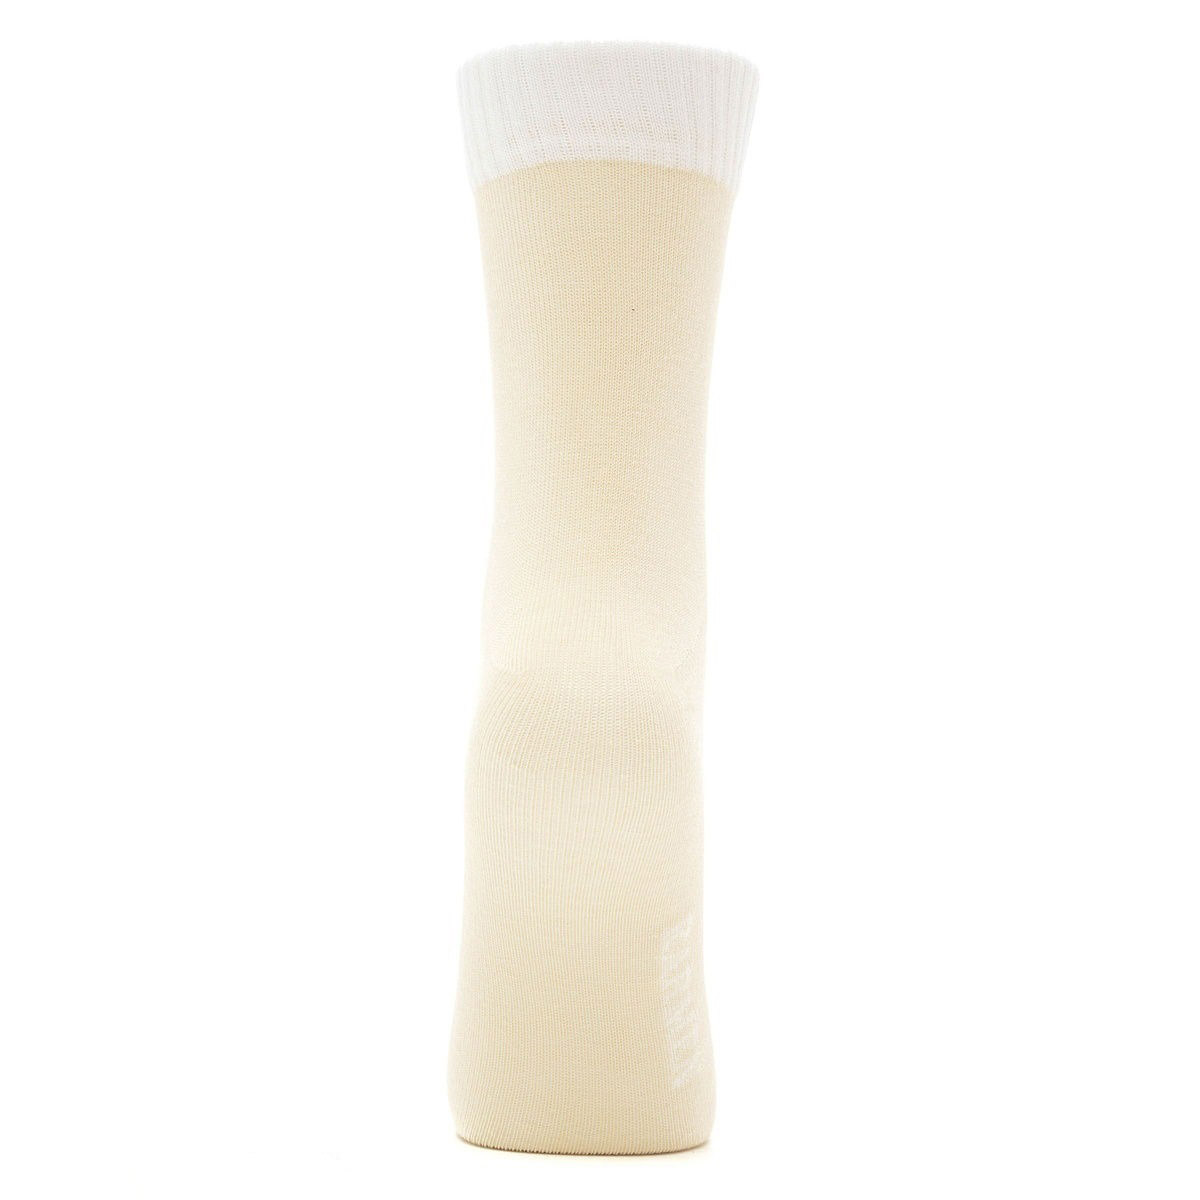 Носки Karmen Calza Look beige S 35-37, цвет бежевый, размер 35-37 - фото 2